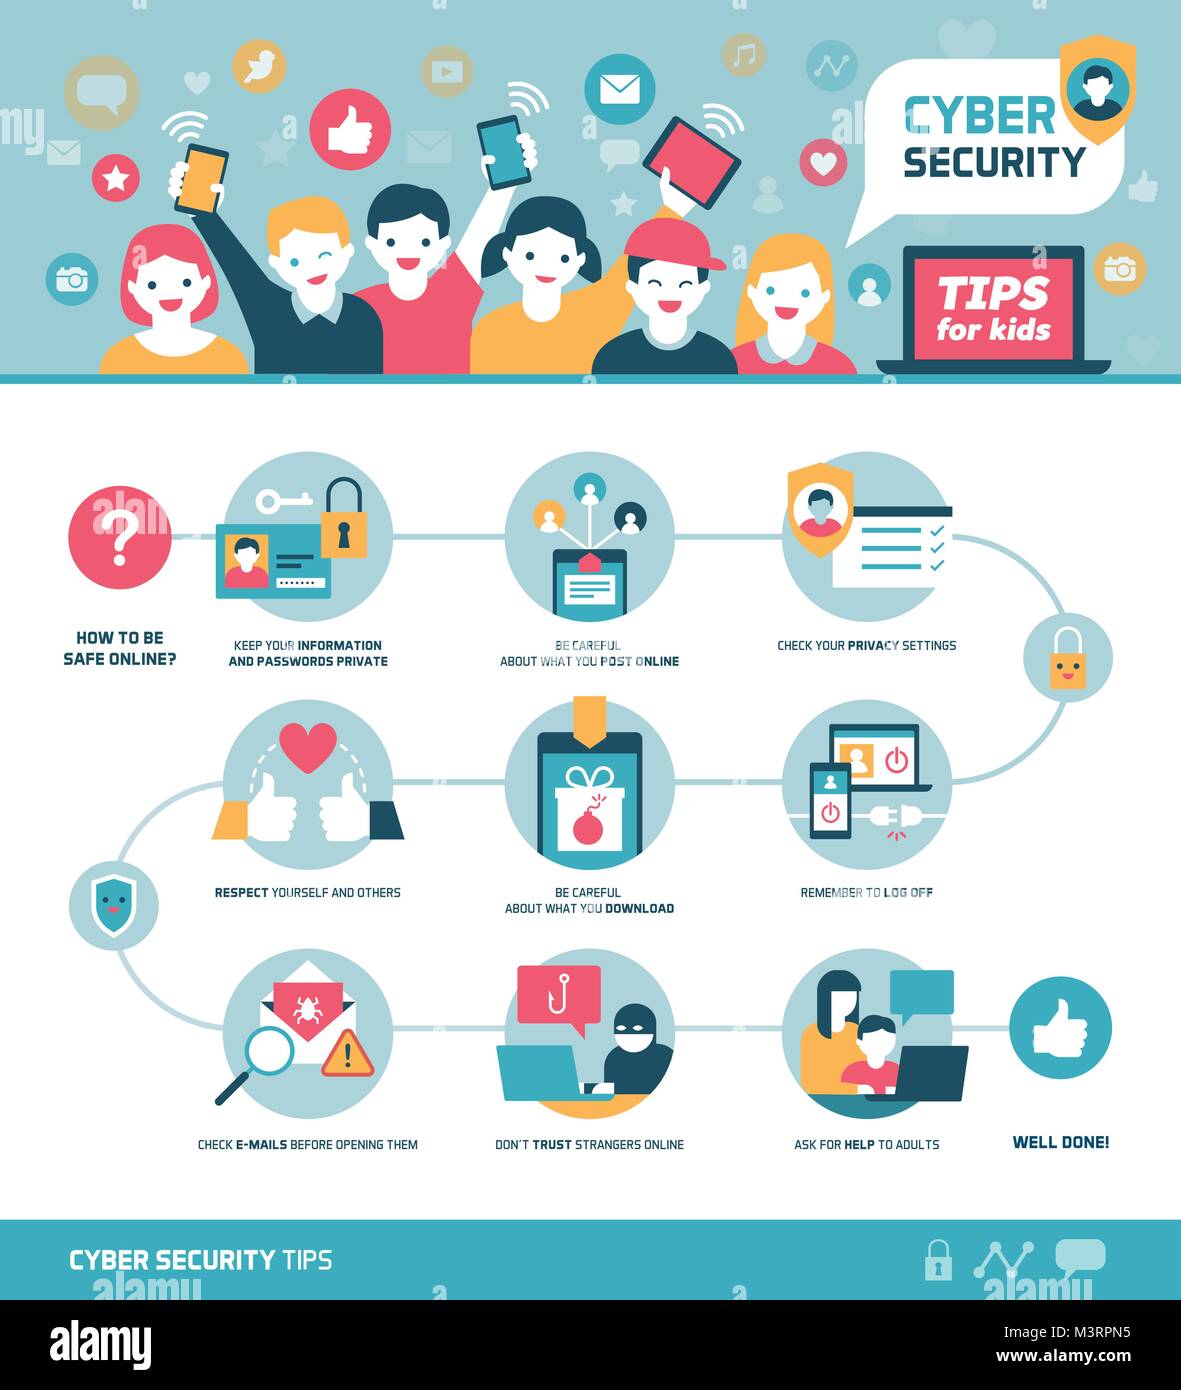 Cyber Security Tipps für Kids Infografik: Wie online zu verbinden und sicher Social Network nutzen, Vektor Infografik mit Symbolen Stock Vektor